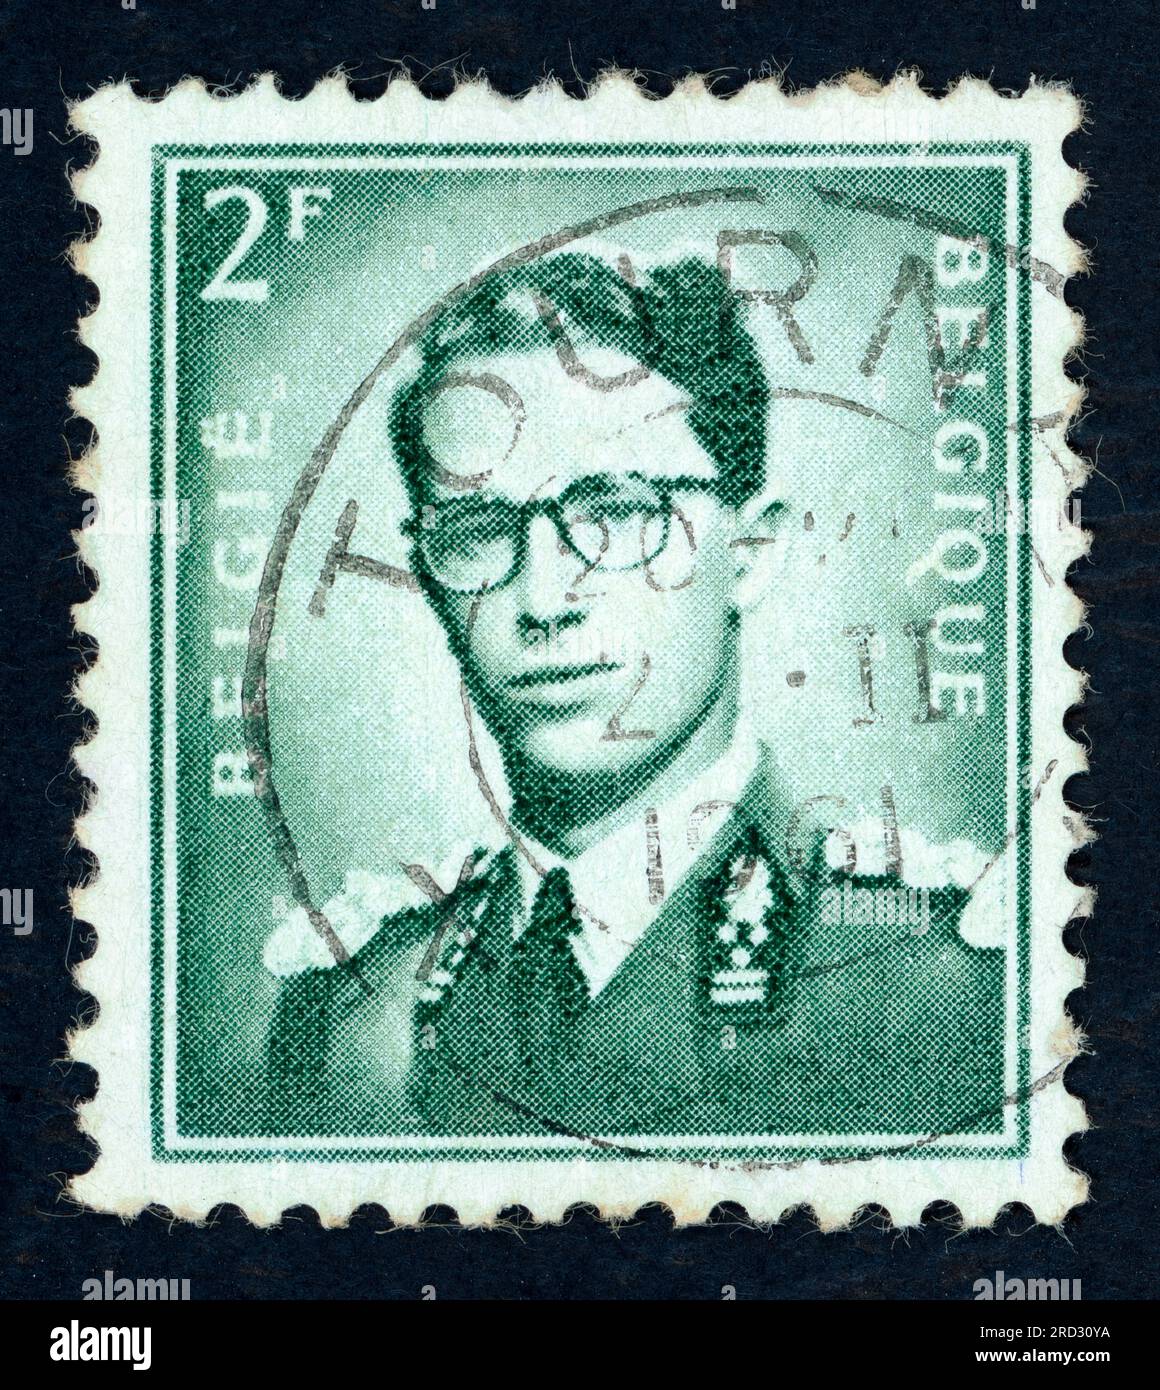 Baudouin (1930–1993), König der Belgier von 1951 bis zu seinem Tod 1993. Briefmarke, ausgestellt in Belgien in den 1950er oder 1960er Jahren Stockfoto